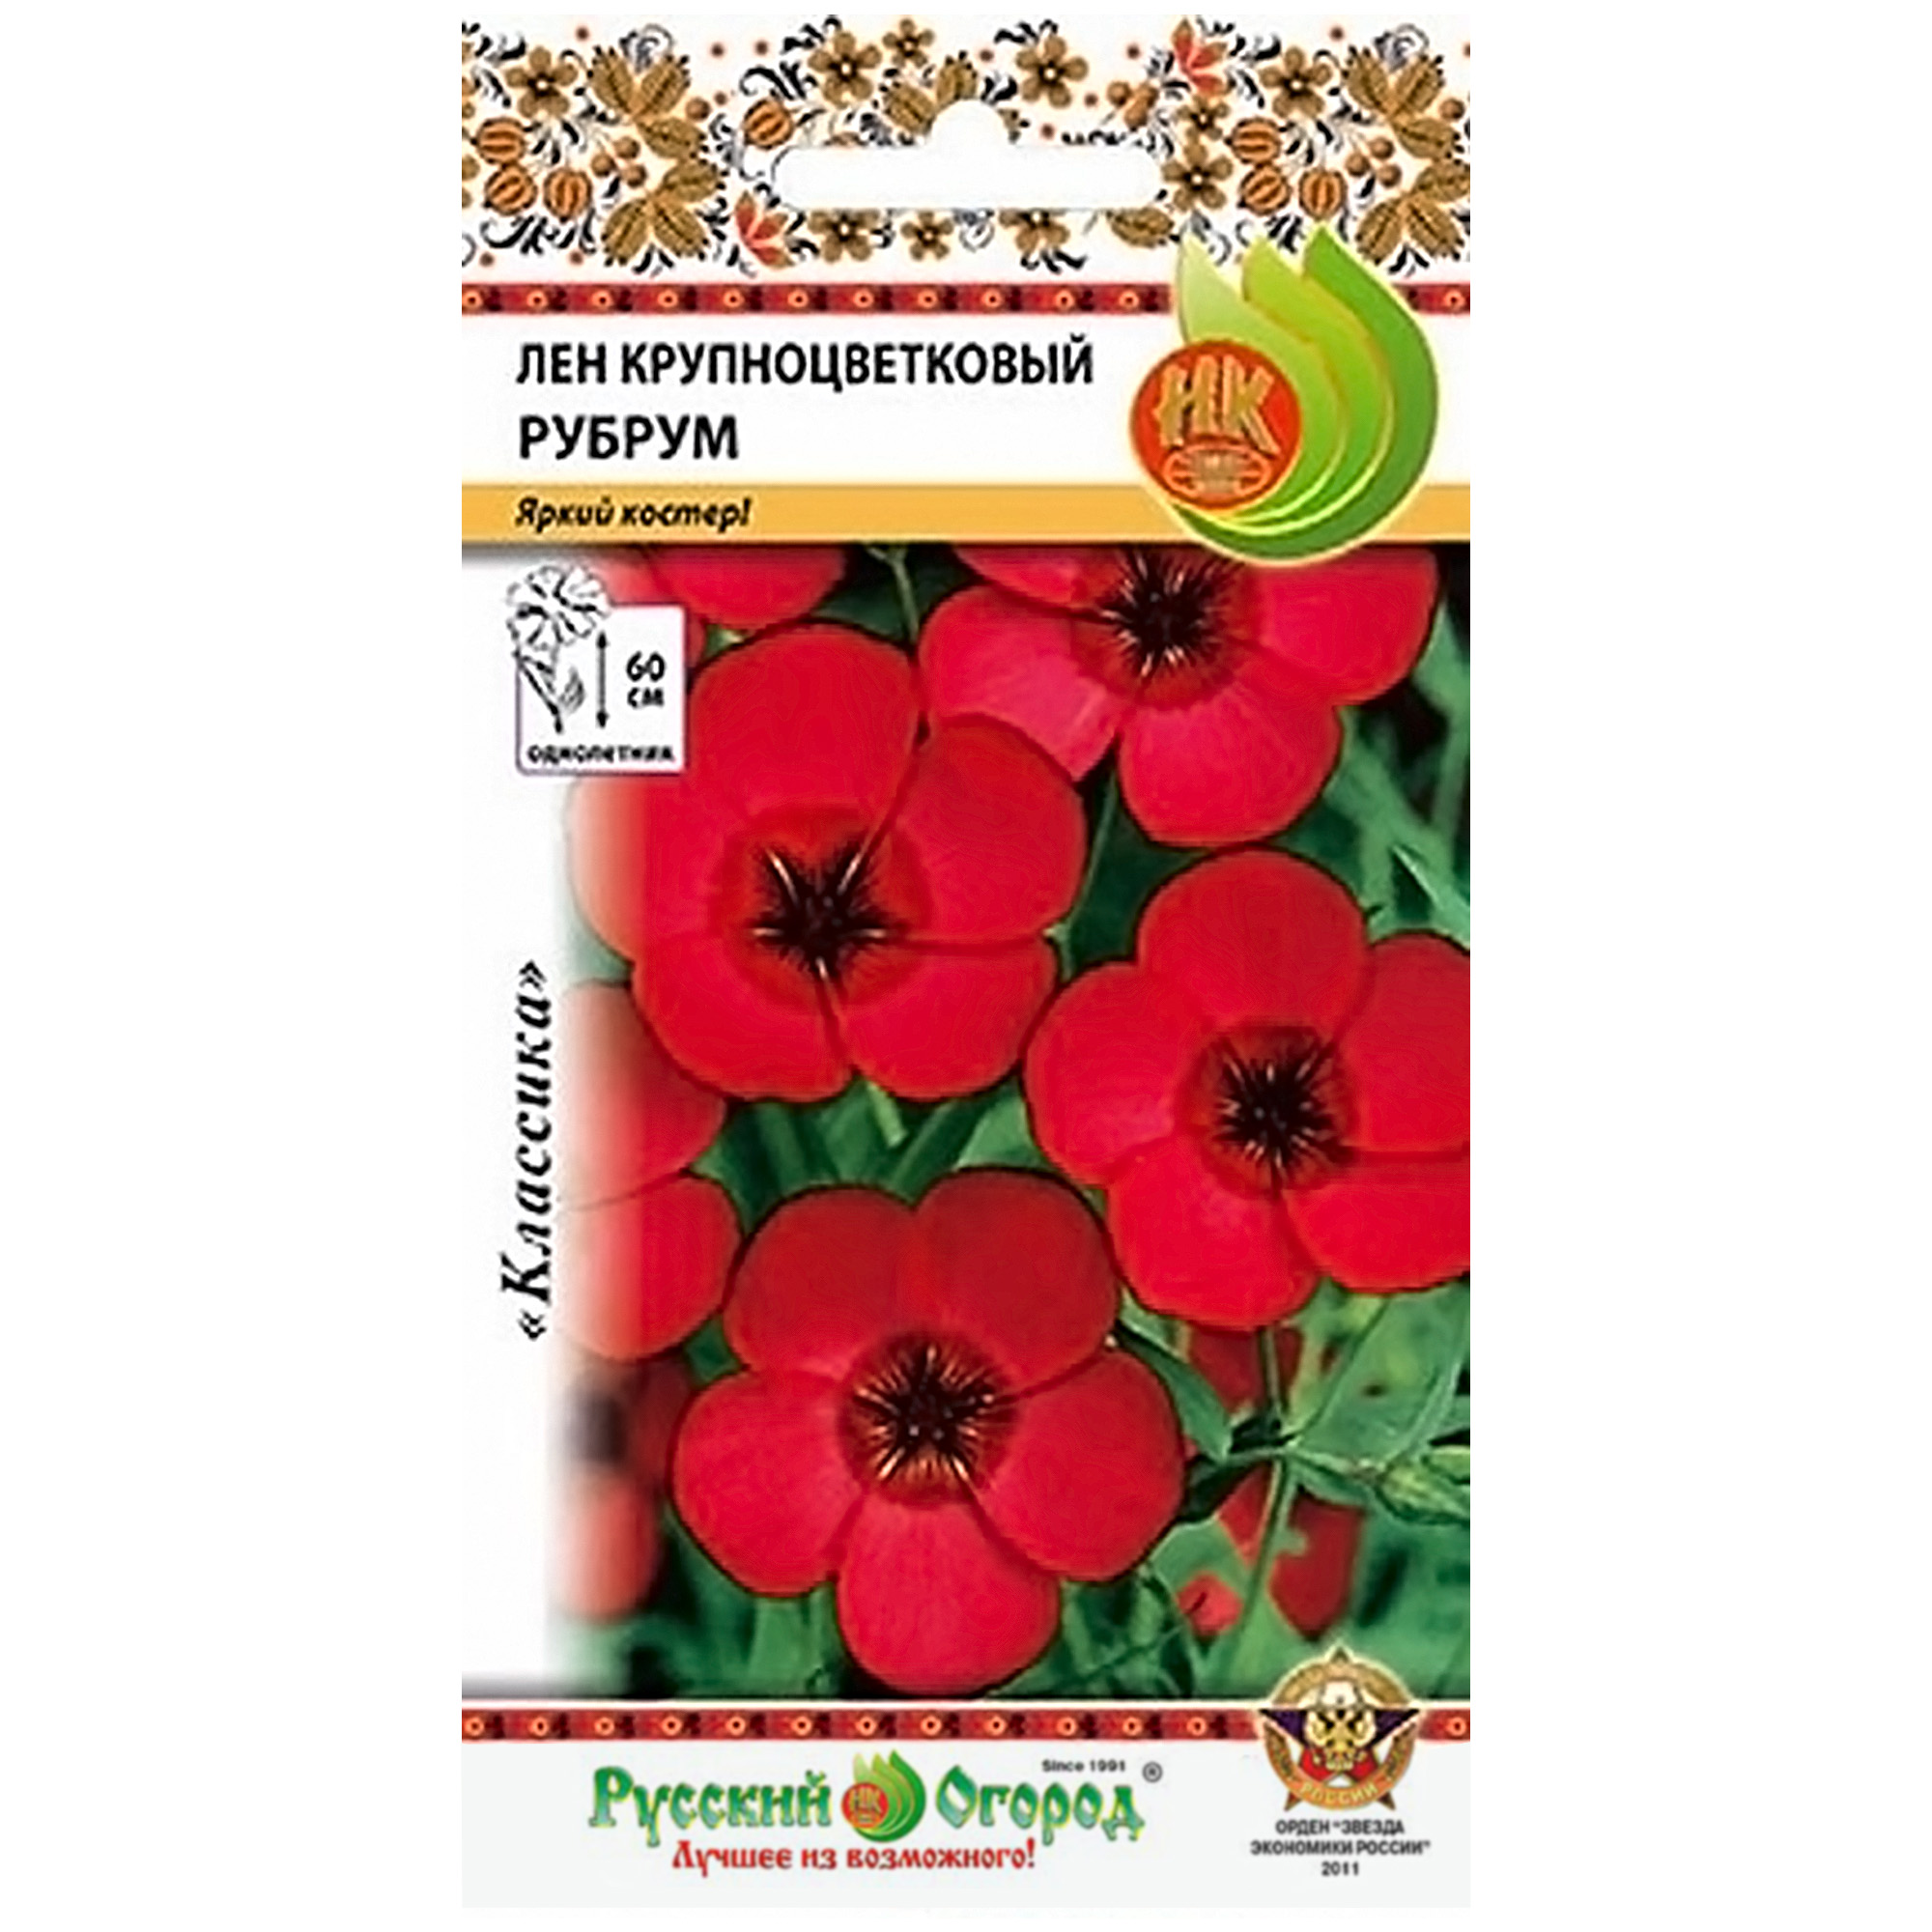 Цветы Лен крупноцветковый рубрум Русский огород 0.5 г